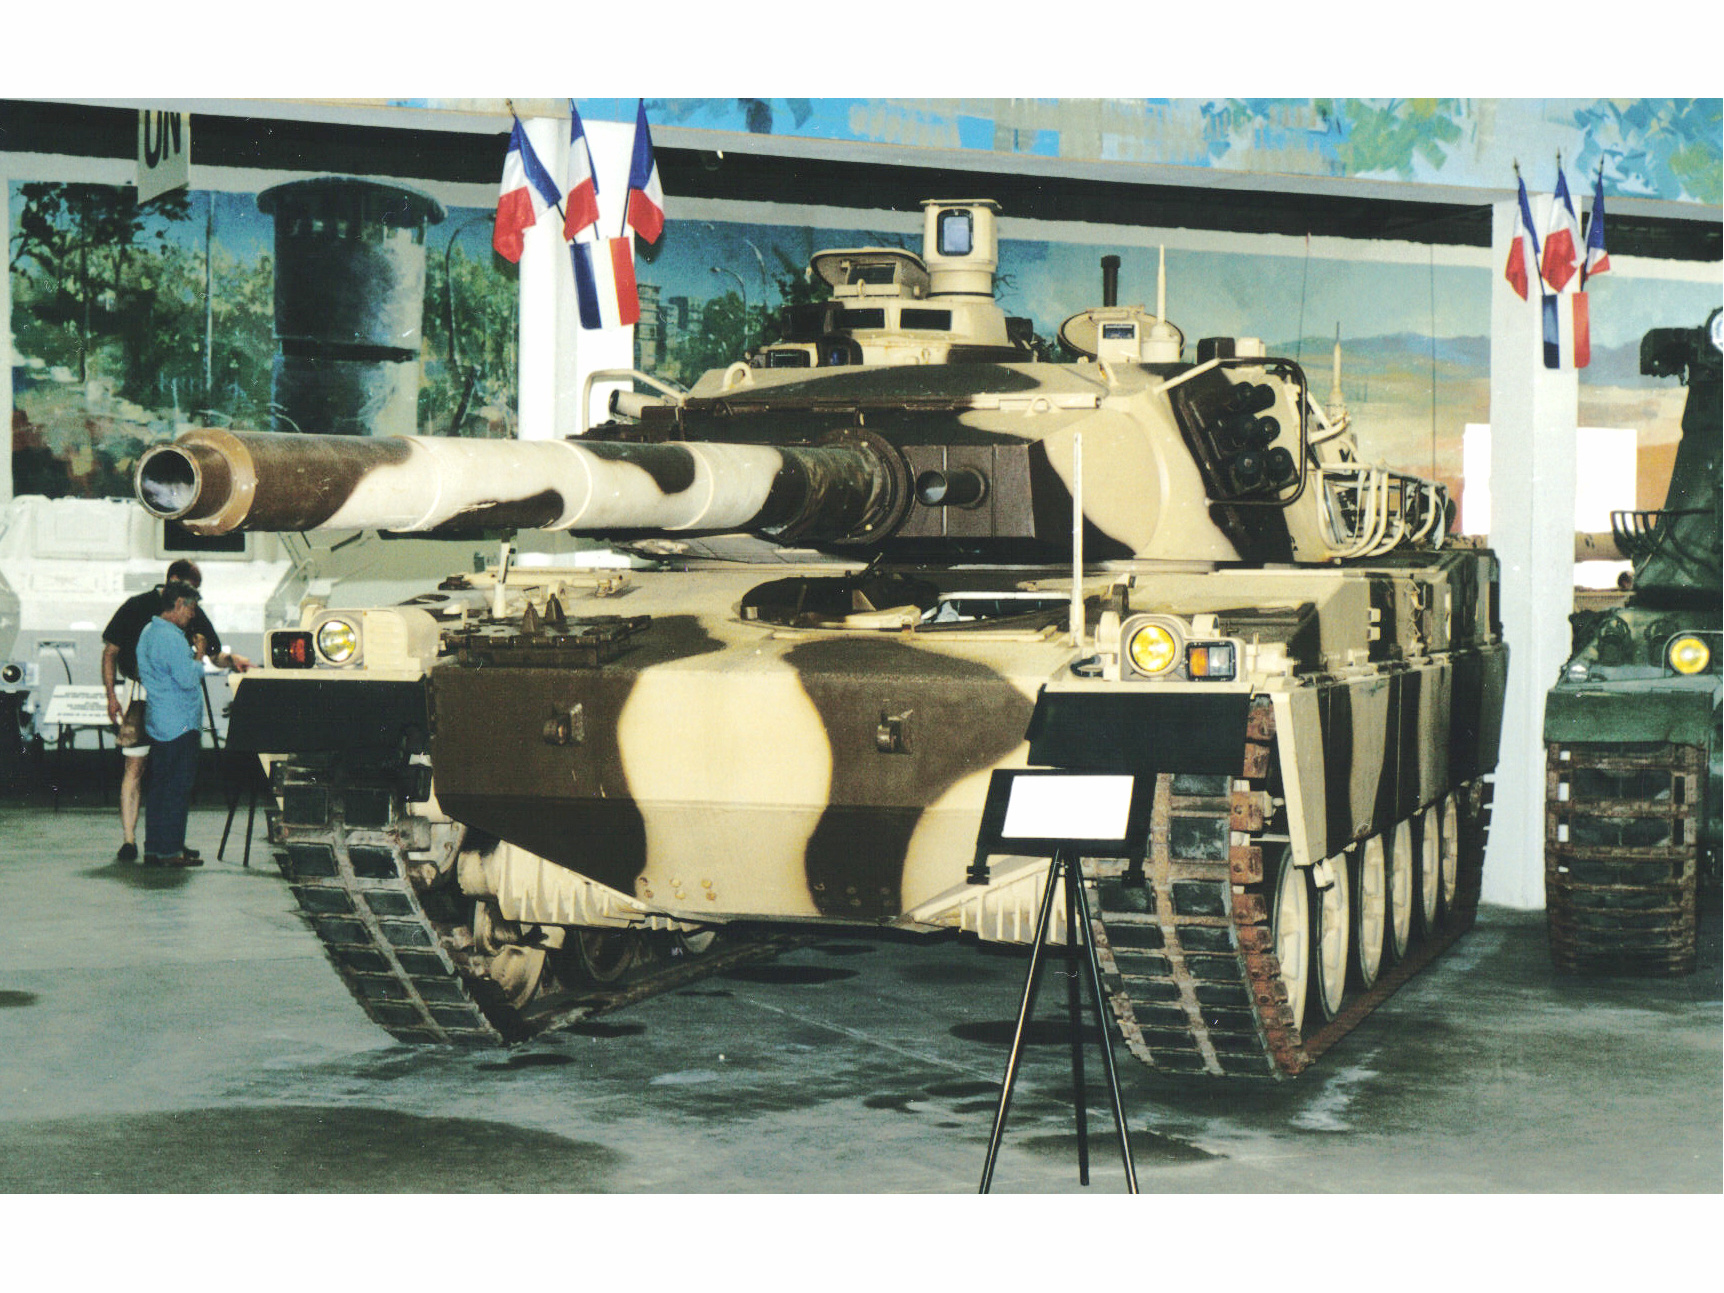 AMX-40主戰坦克